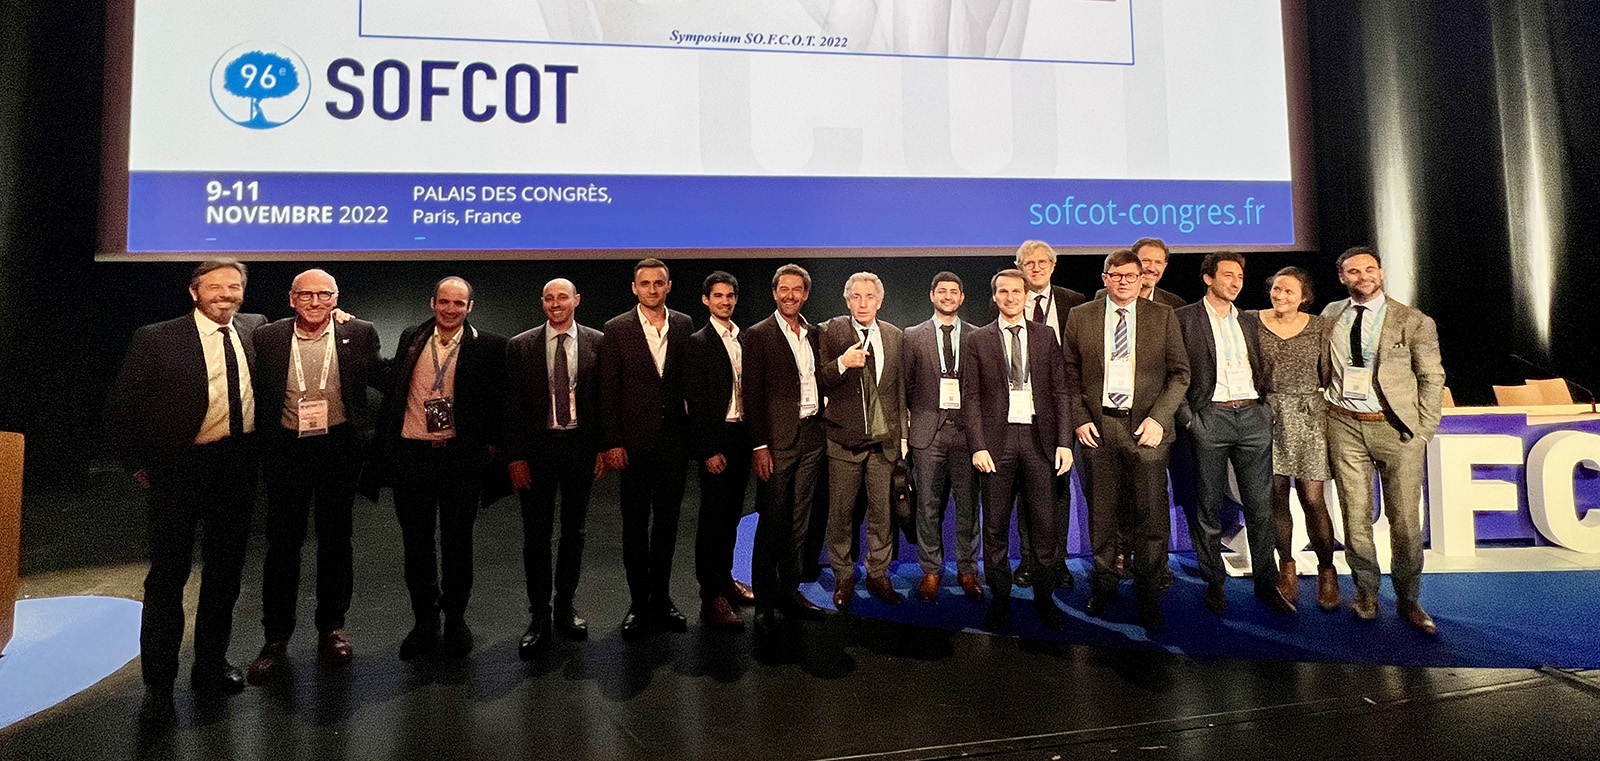 Congrès annuel de la Société Française de Chirurgie Orthopédique et de Traumatologie (SOFCOT) à Paris, du 9 au 11 novembre 2022